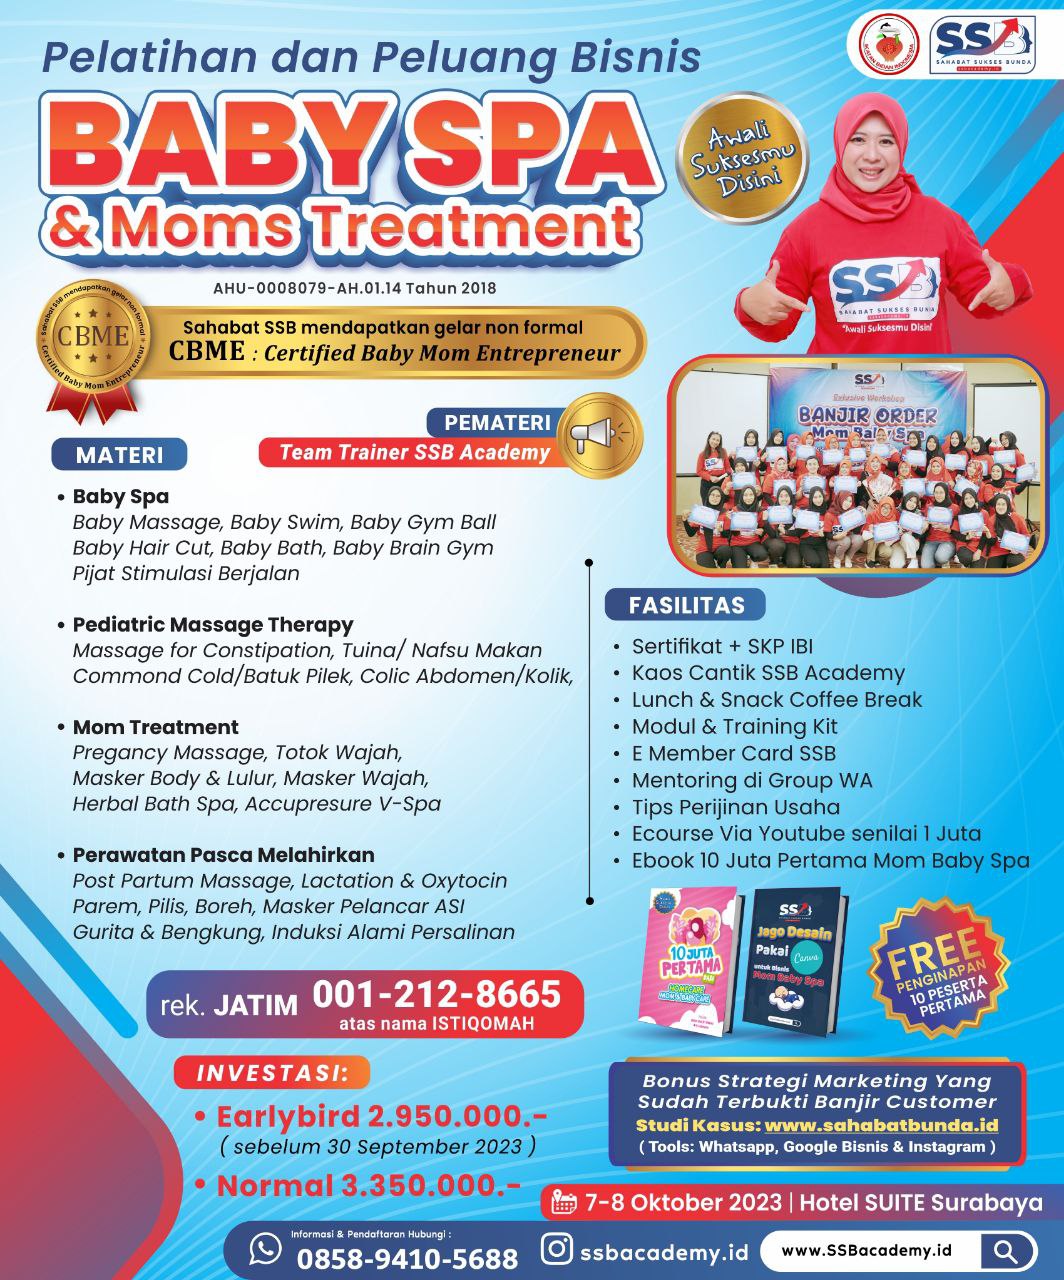 Pelatihan Baby Spa Bersertifikat di Pasuruan Bersertifikat CBME ( Certified Baby Moms Entrepreneur )